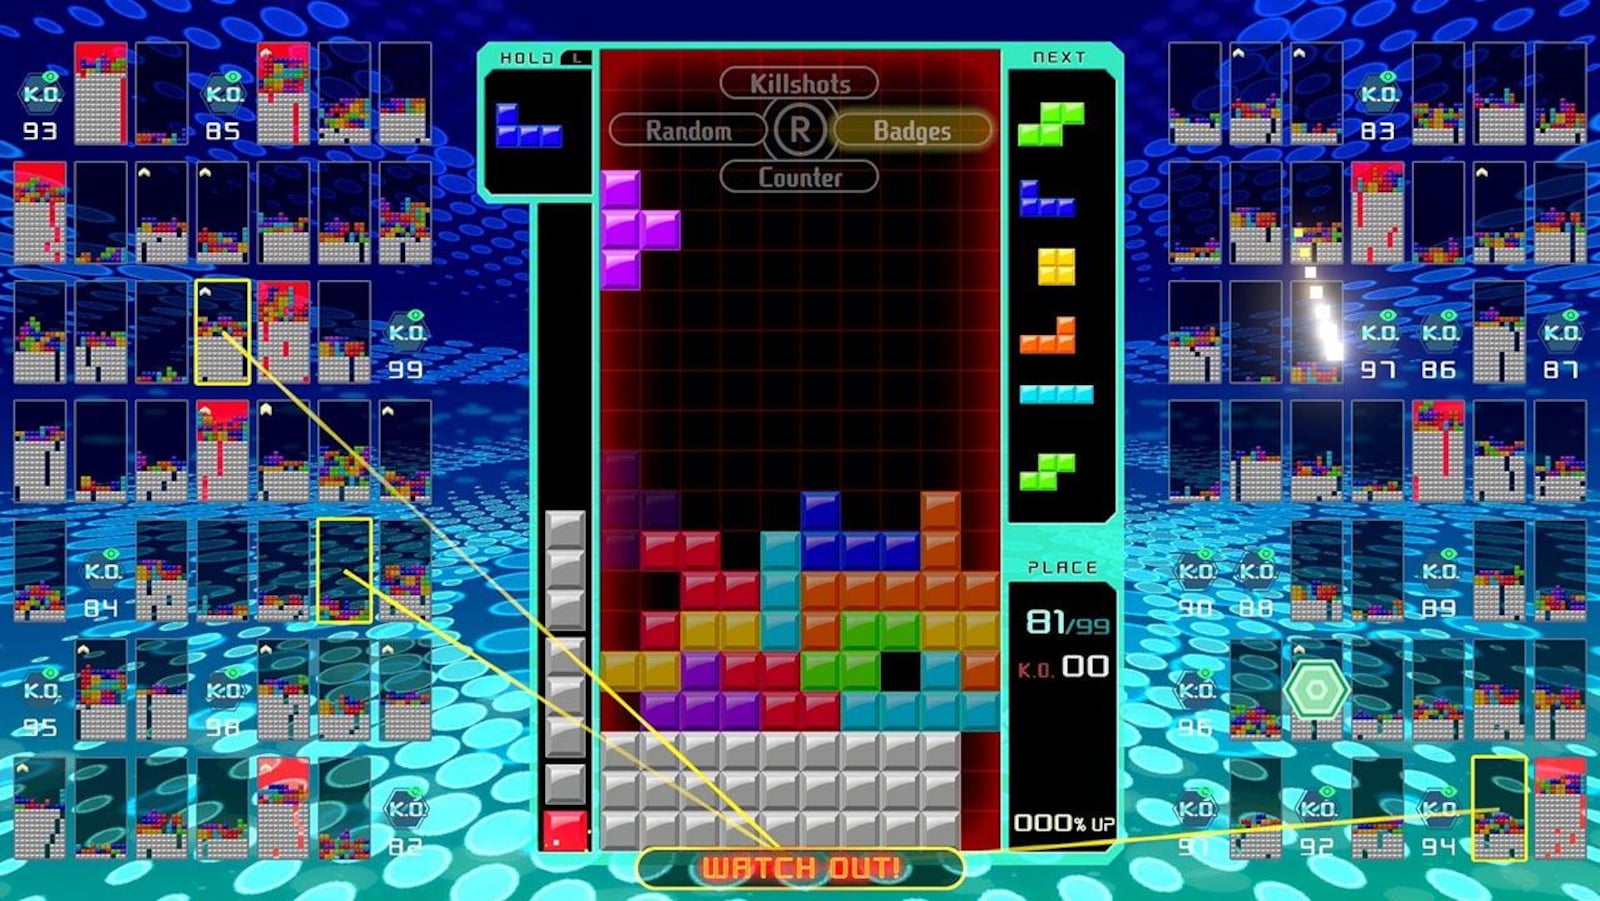 Tetris S Attaque A Fortnite Et Entre Dans L Arene Des Battle - une capture d ecran du jeu video tetris 99 montrant une pile de petits blocs